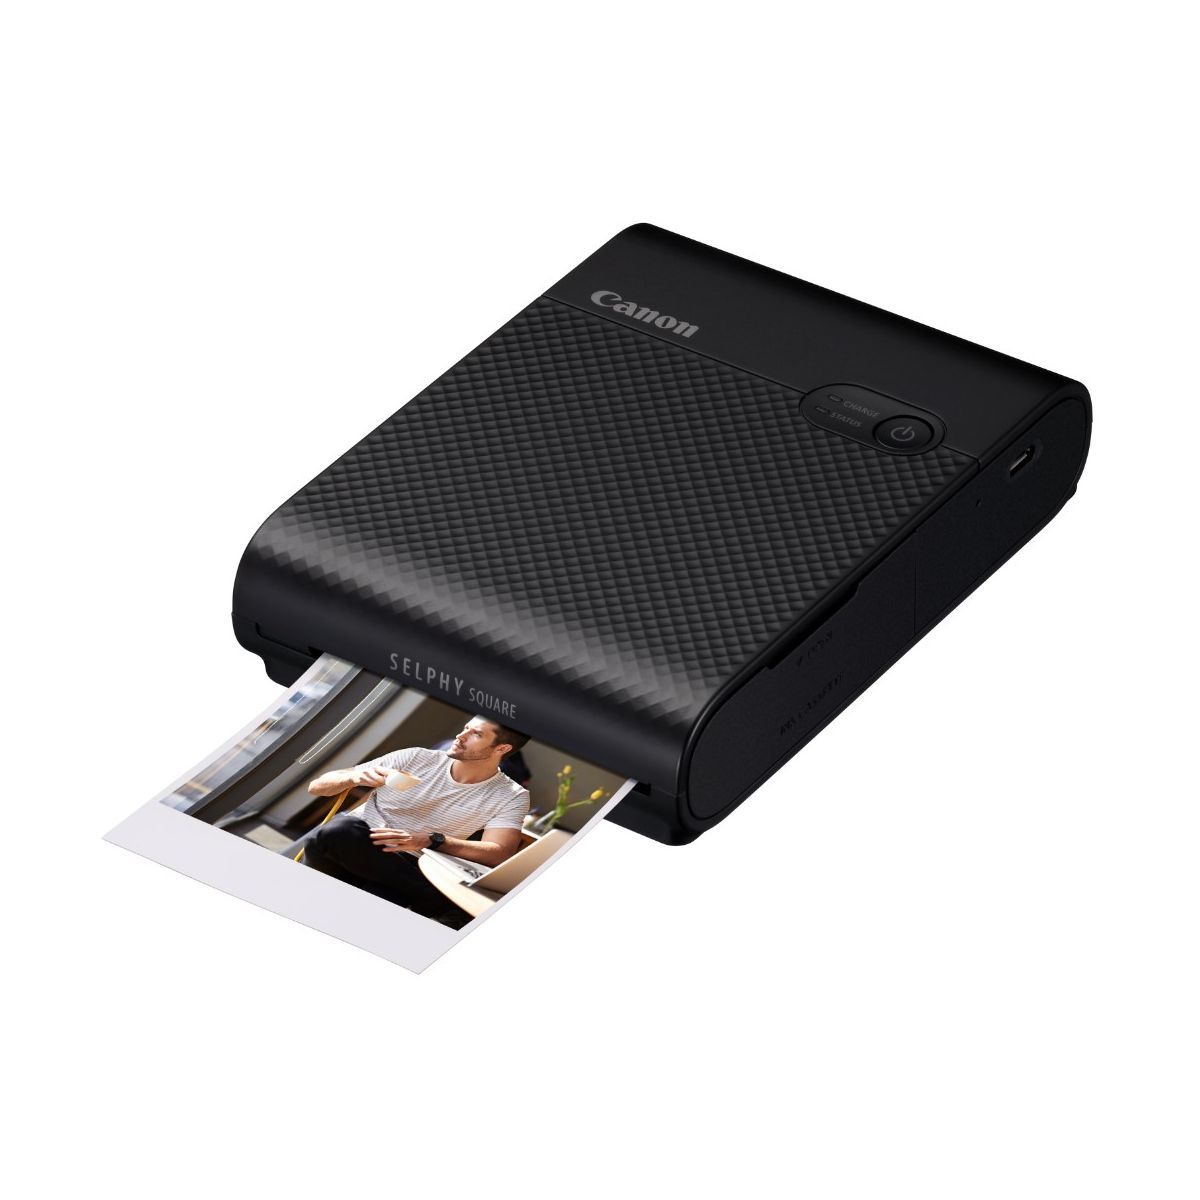 Canon Imprimante photo portable Selphy Square QX10 Noire